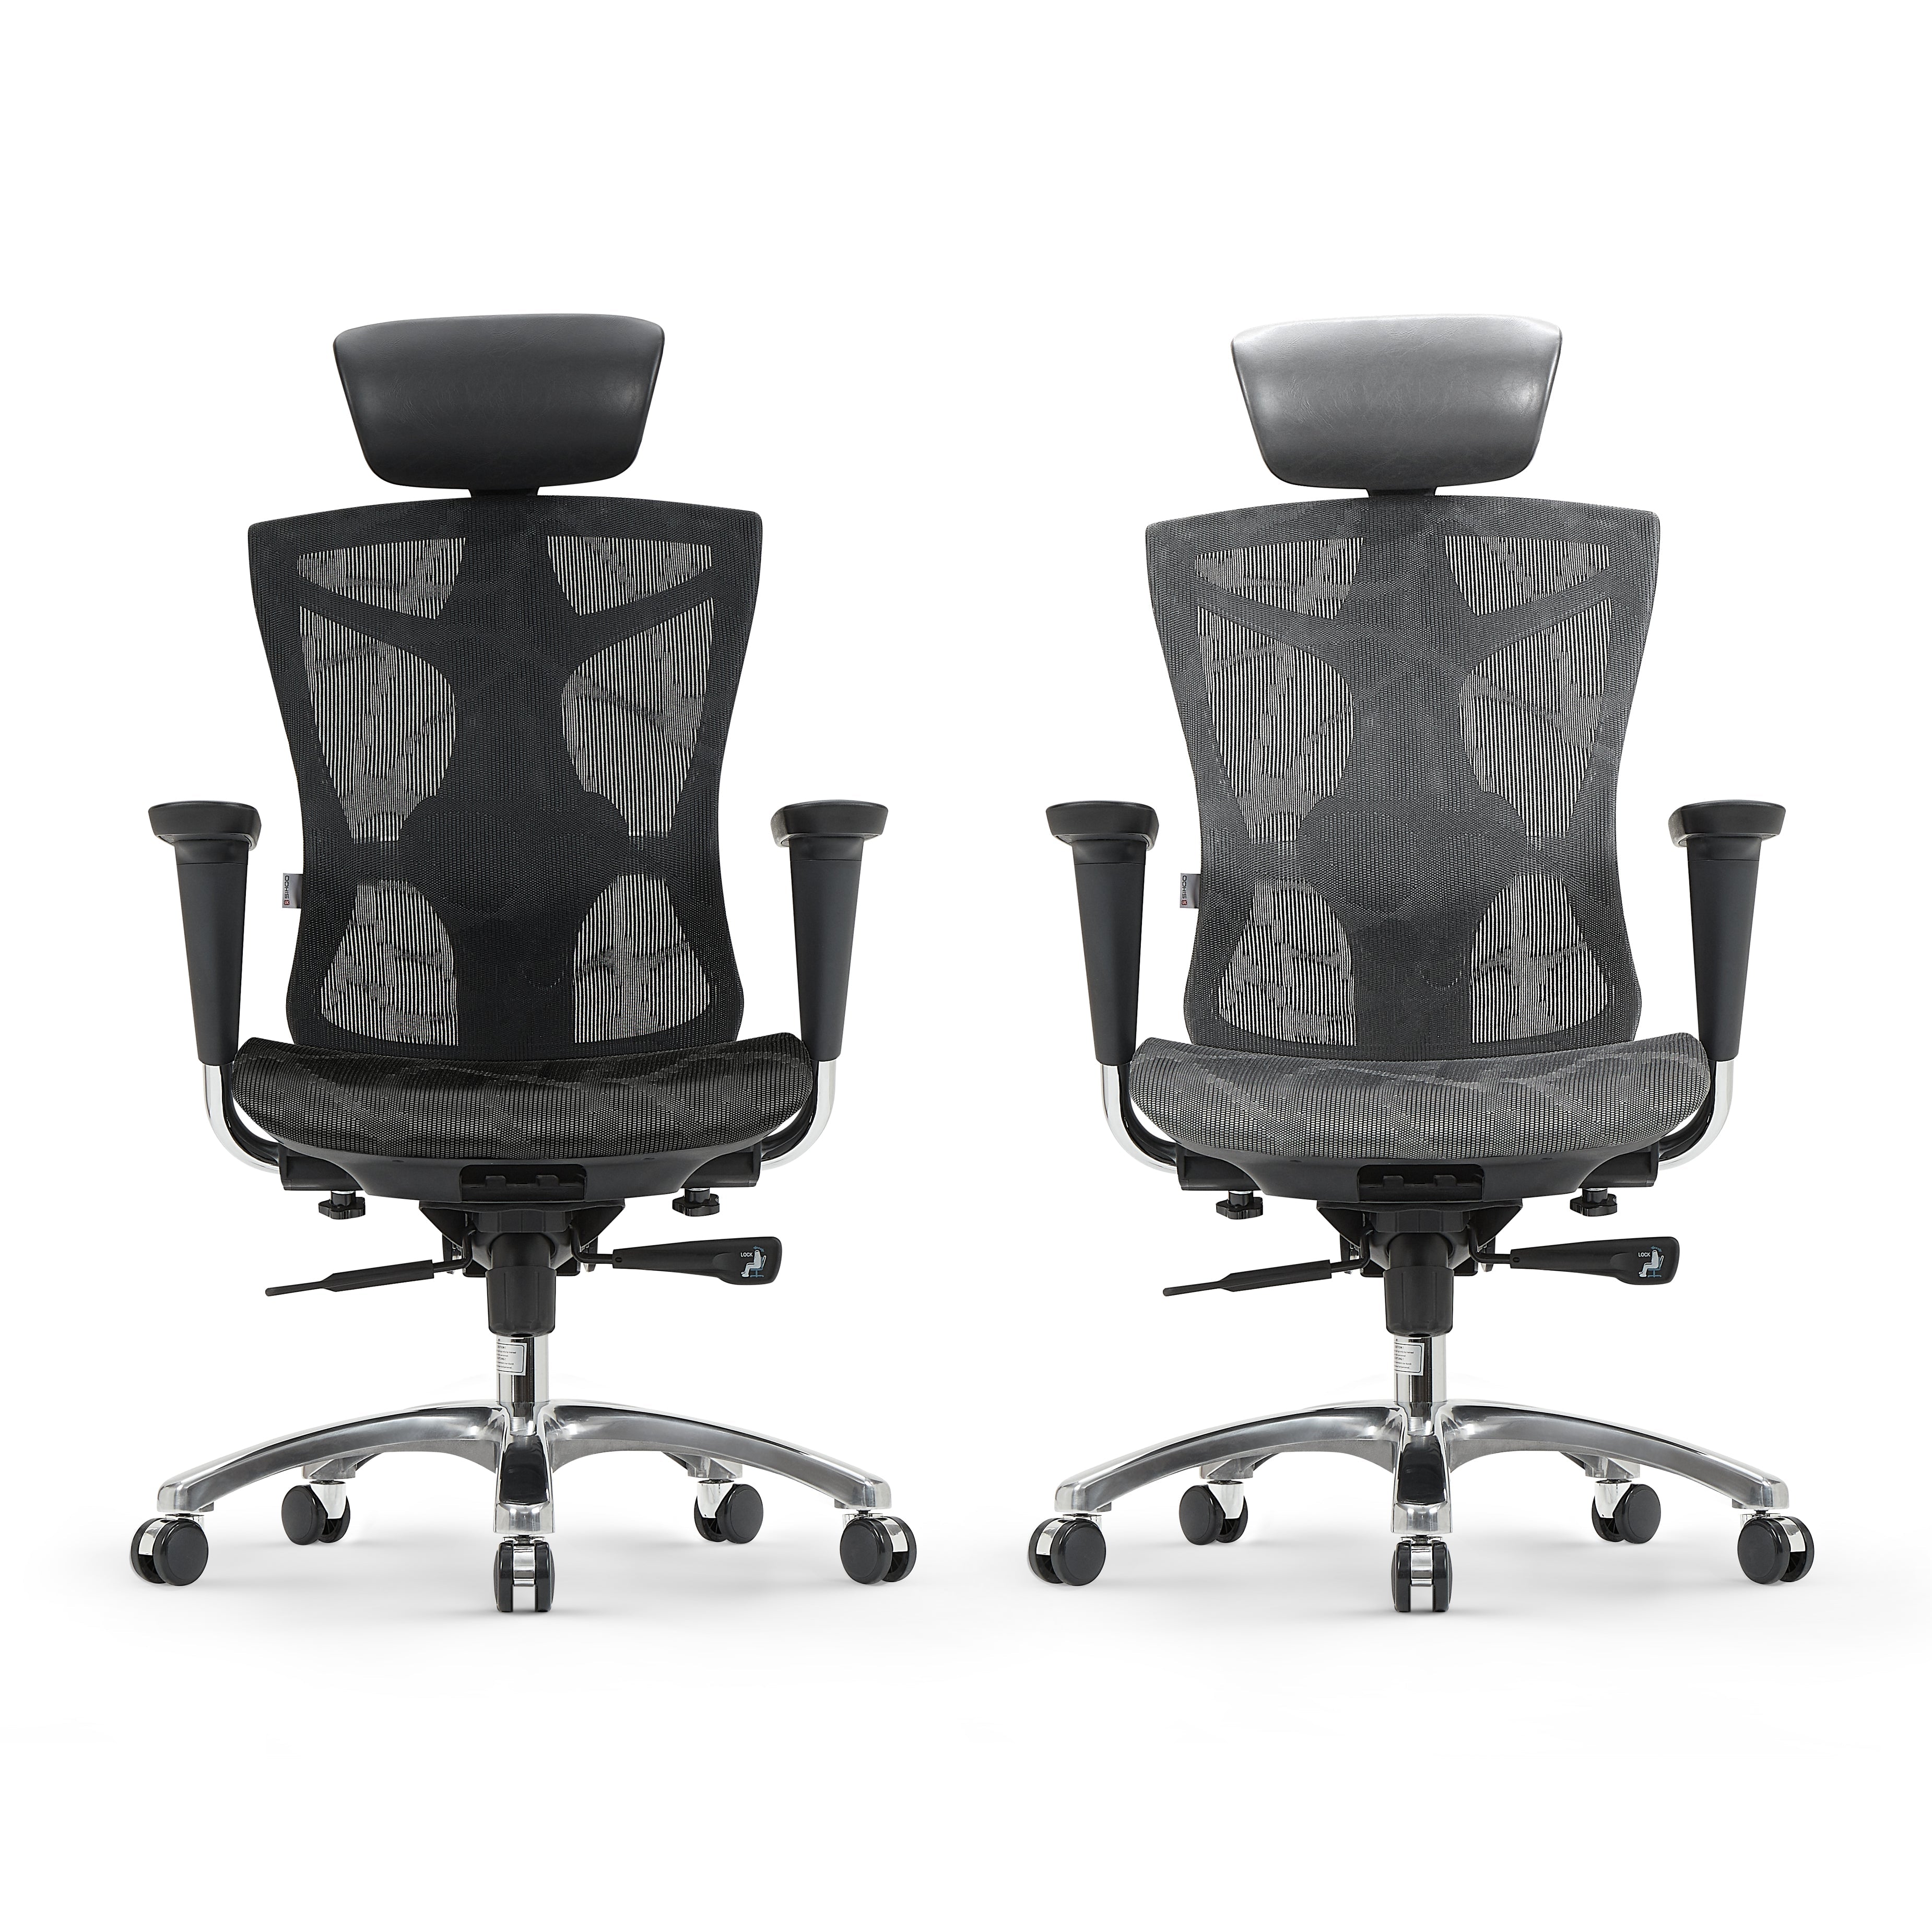 SIHOO V1 Ergonomic Office Chair High Back